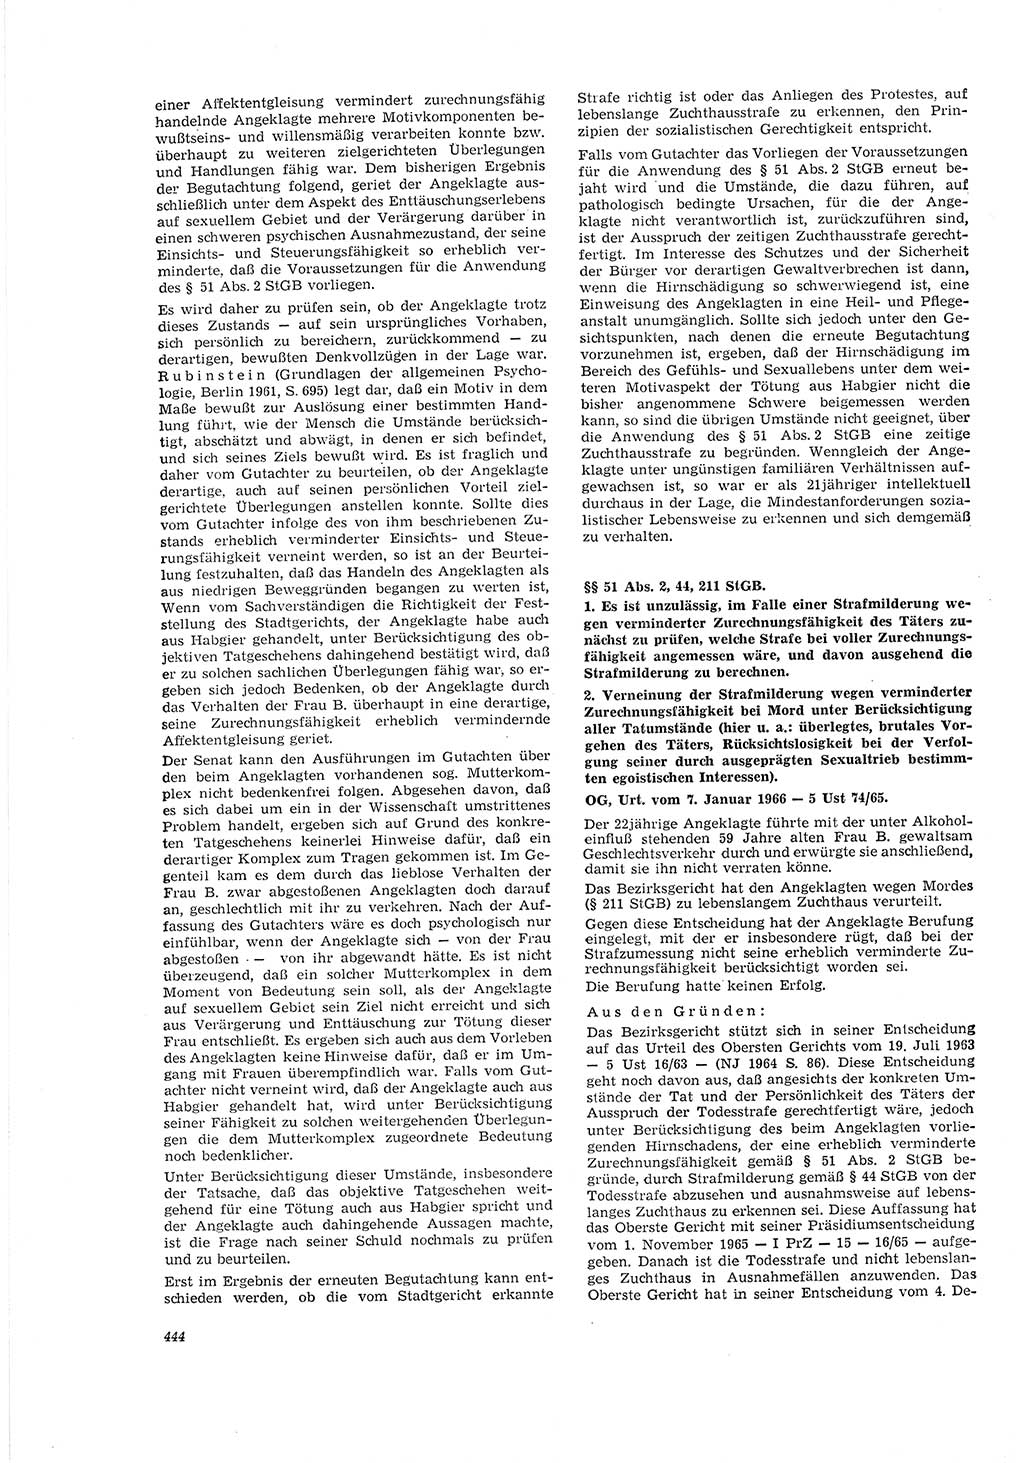 Neue Justiz (NJ), Zeitschrift für Recht und Rechtswissenschaft [Deutsche Demokratische Republik (DDR)], 20. Jahrgang 1966, Seite 444 (NJ DDR 1966, S. 444)